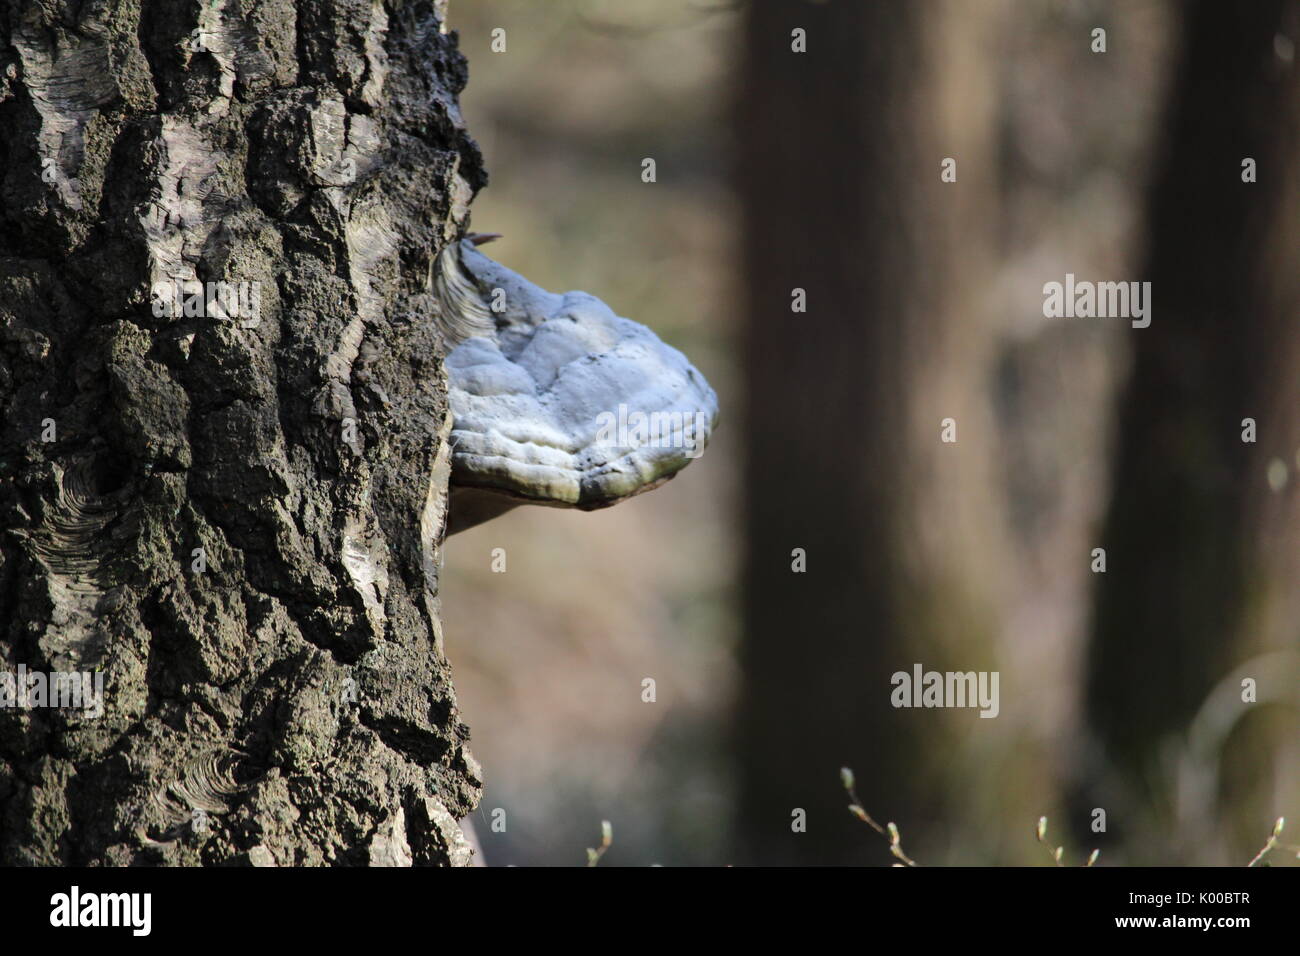 Mushroom on a tree Stock Photo